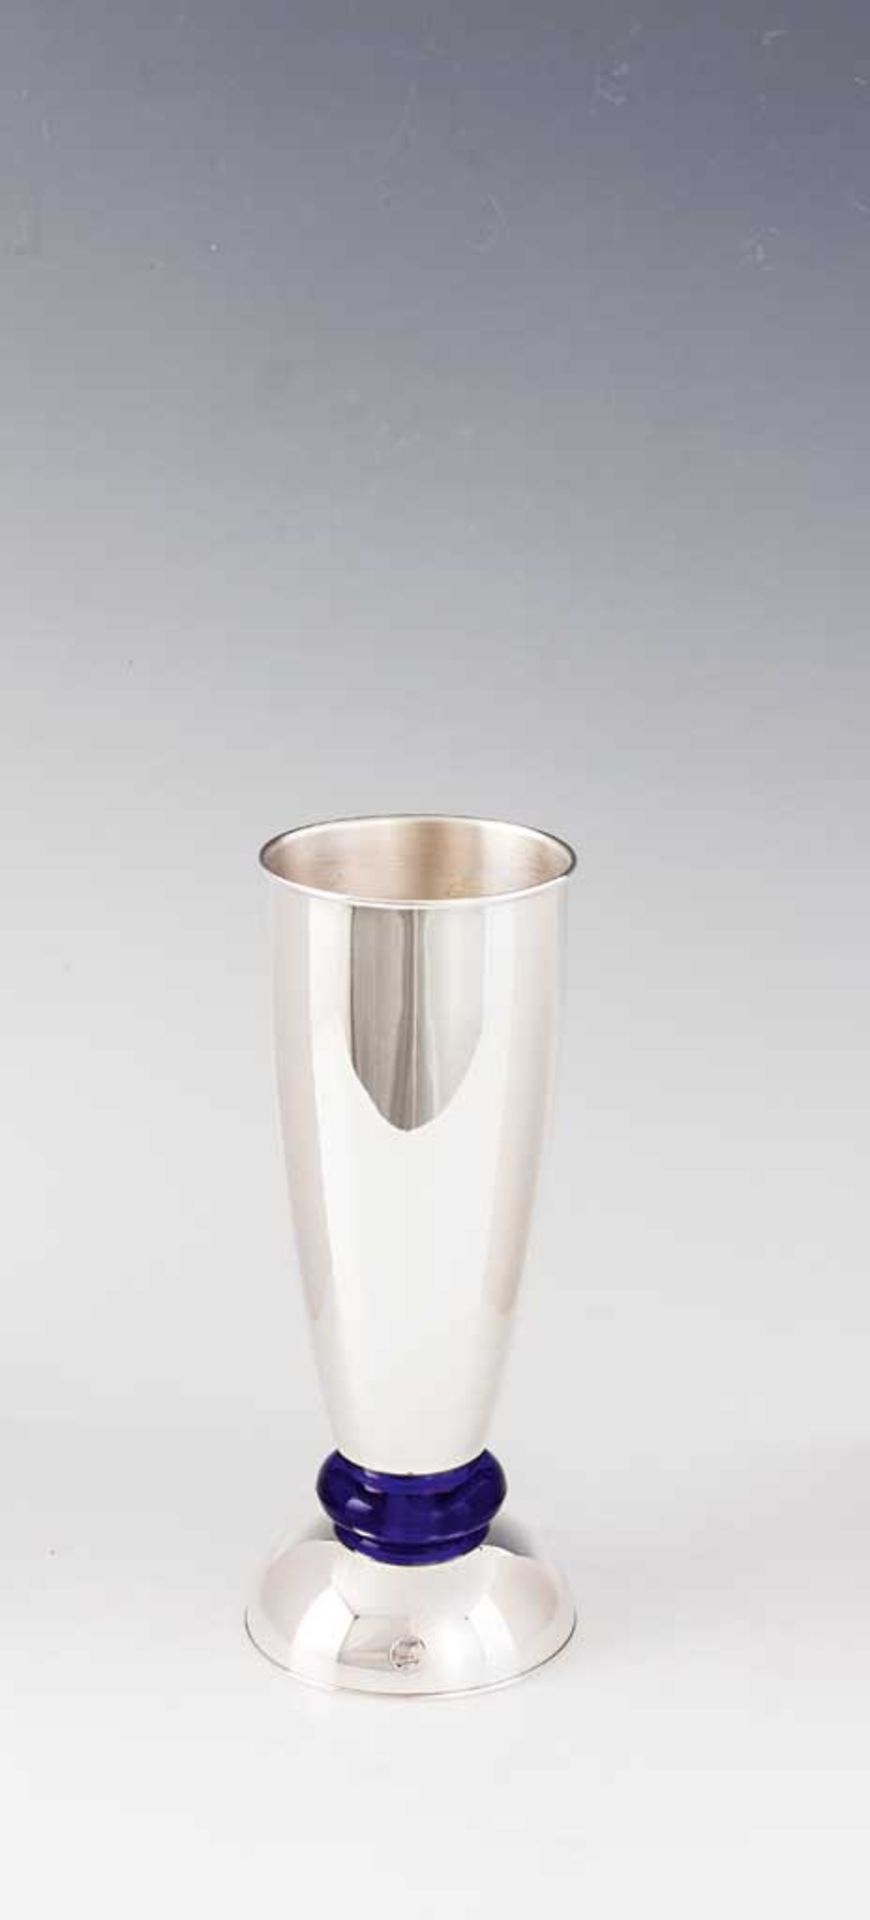 Munari-Objekt, als Vase und Kerzenständer zu verwenden. Sterlingsilber mit kobaltblauem Glas. H 24